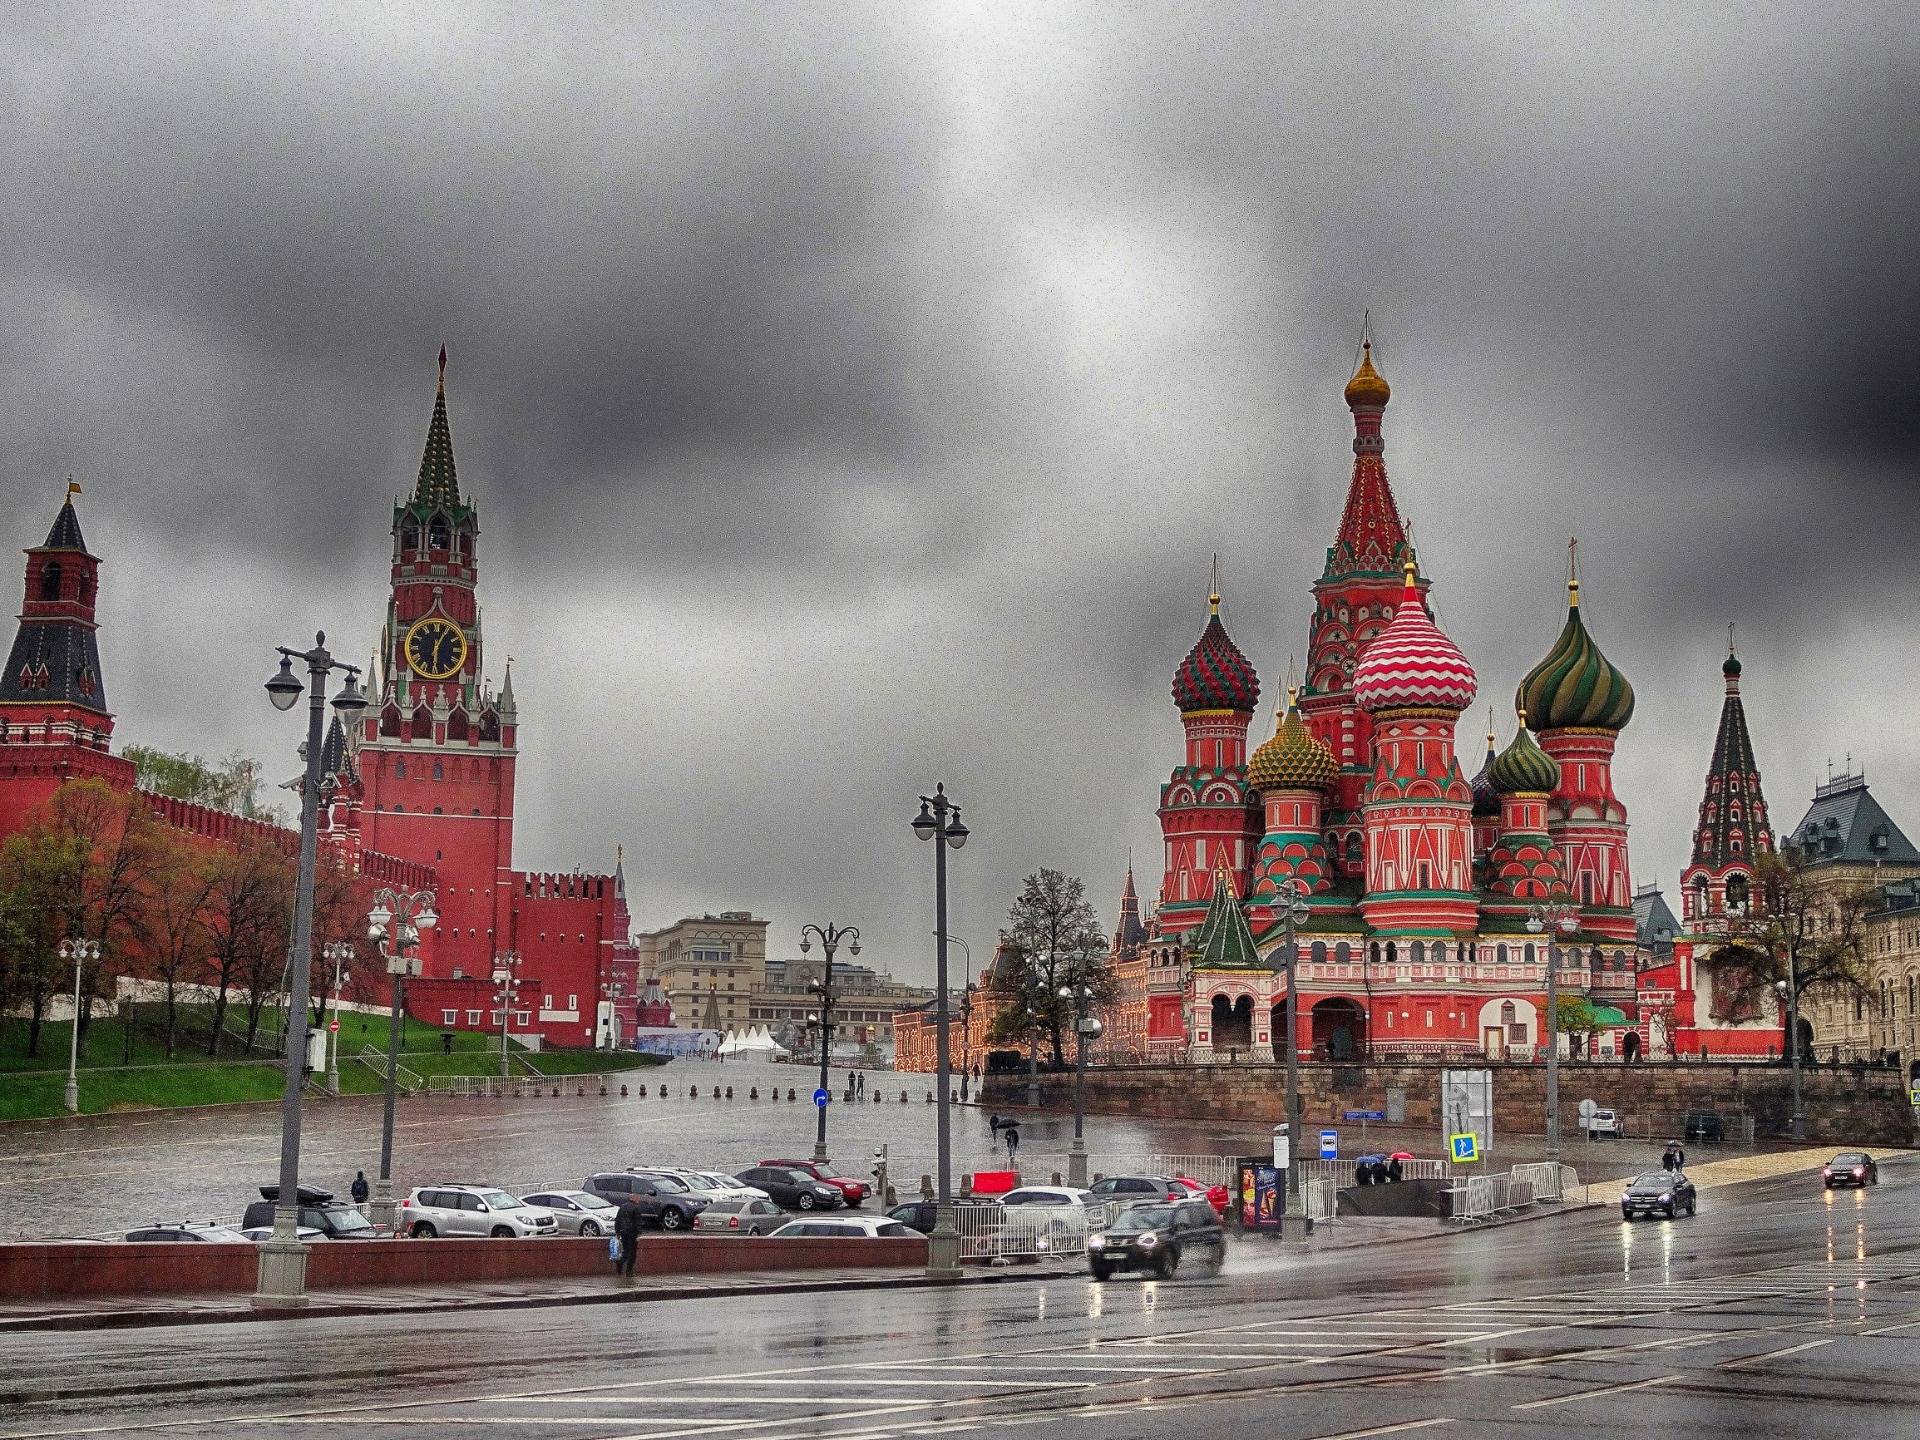 The Kremlin seen from outside